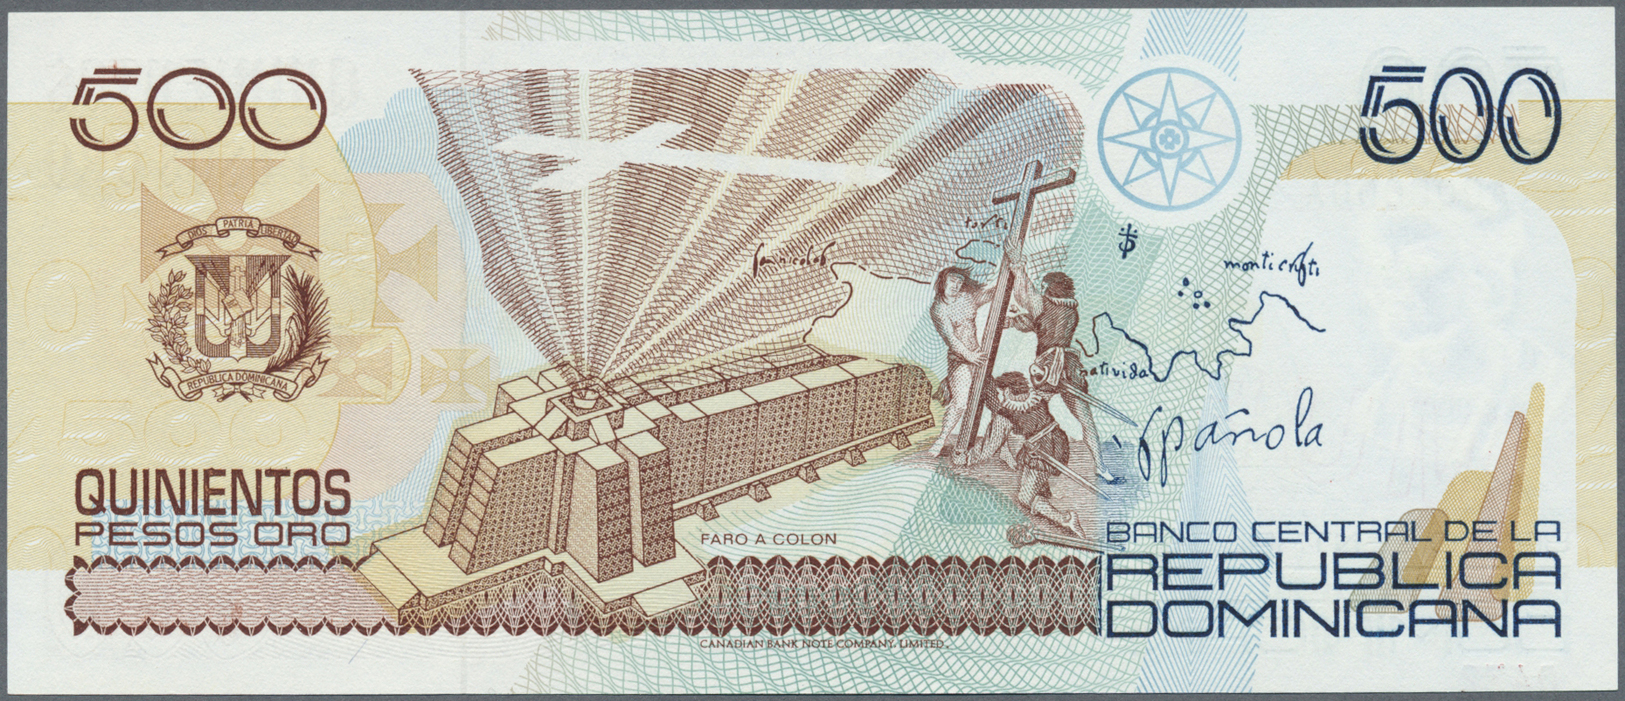 00665 Dominican Republic / Dominikanische Republik: 500 Pesos 1992 Specimen P. 140b, Zero Serial Numbers, MUESTRA Overpr - Dominicana